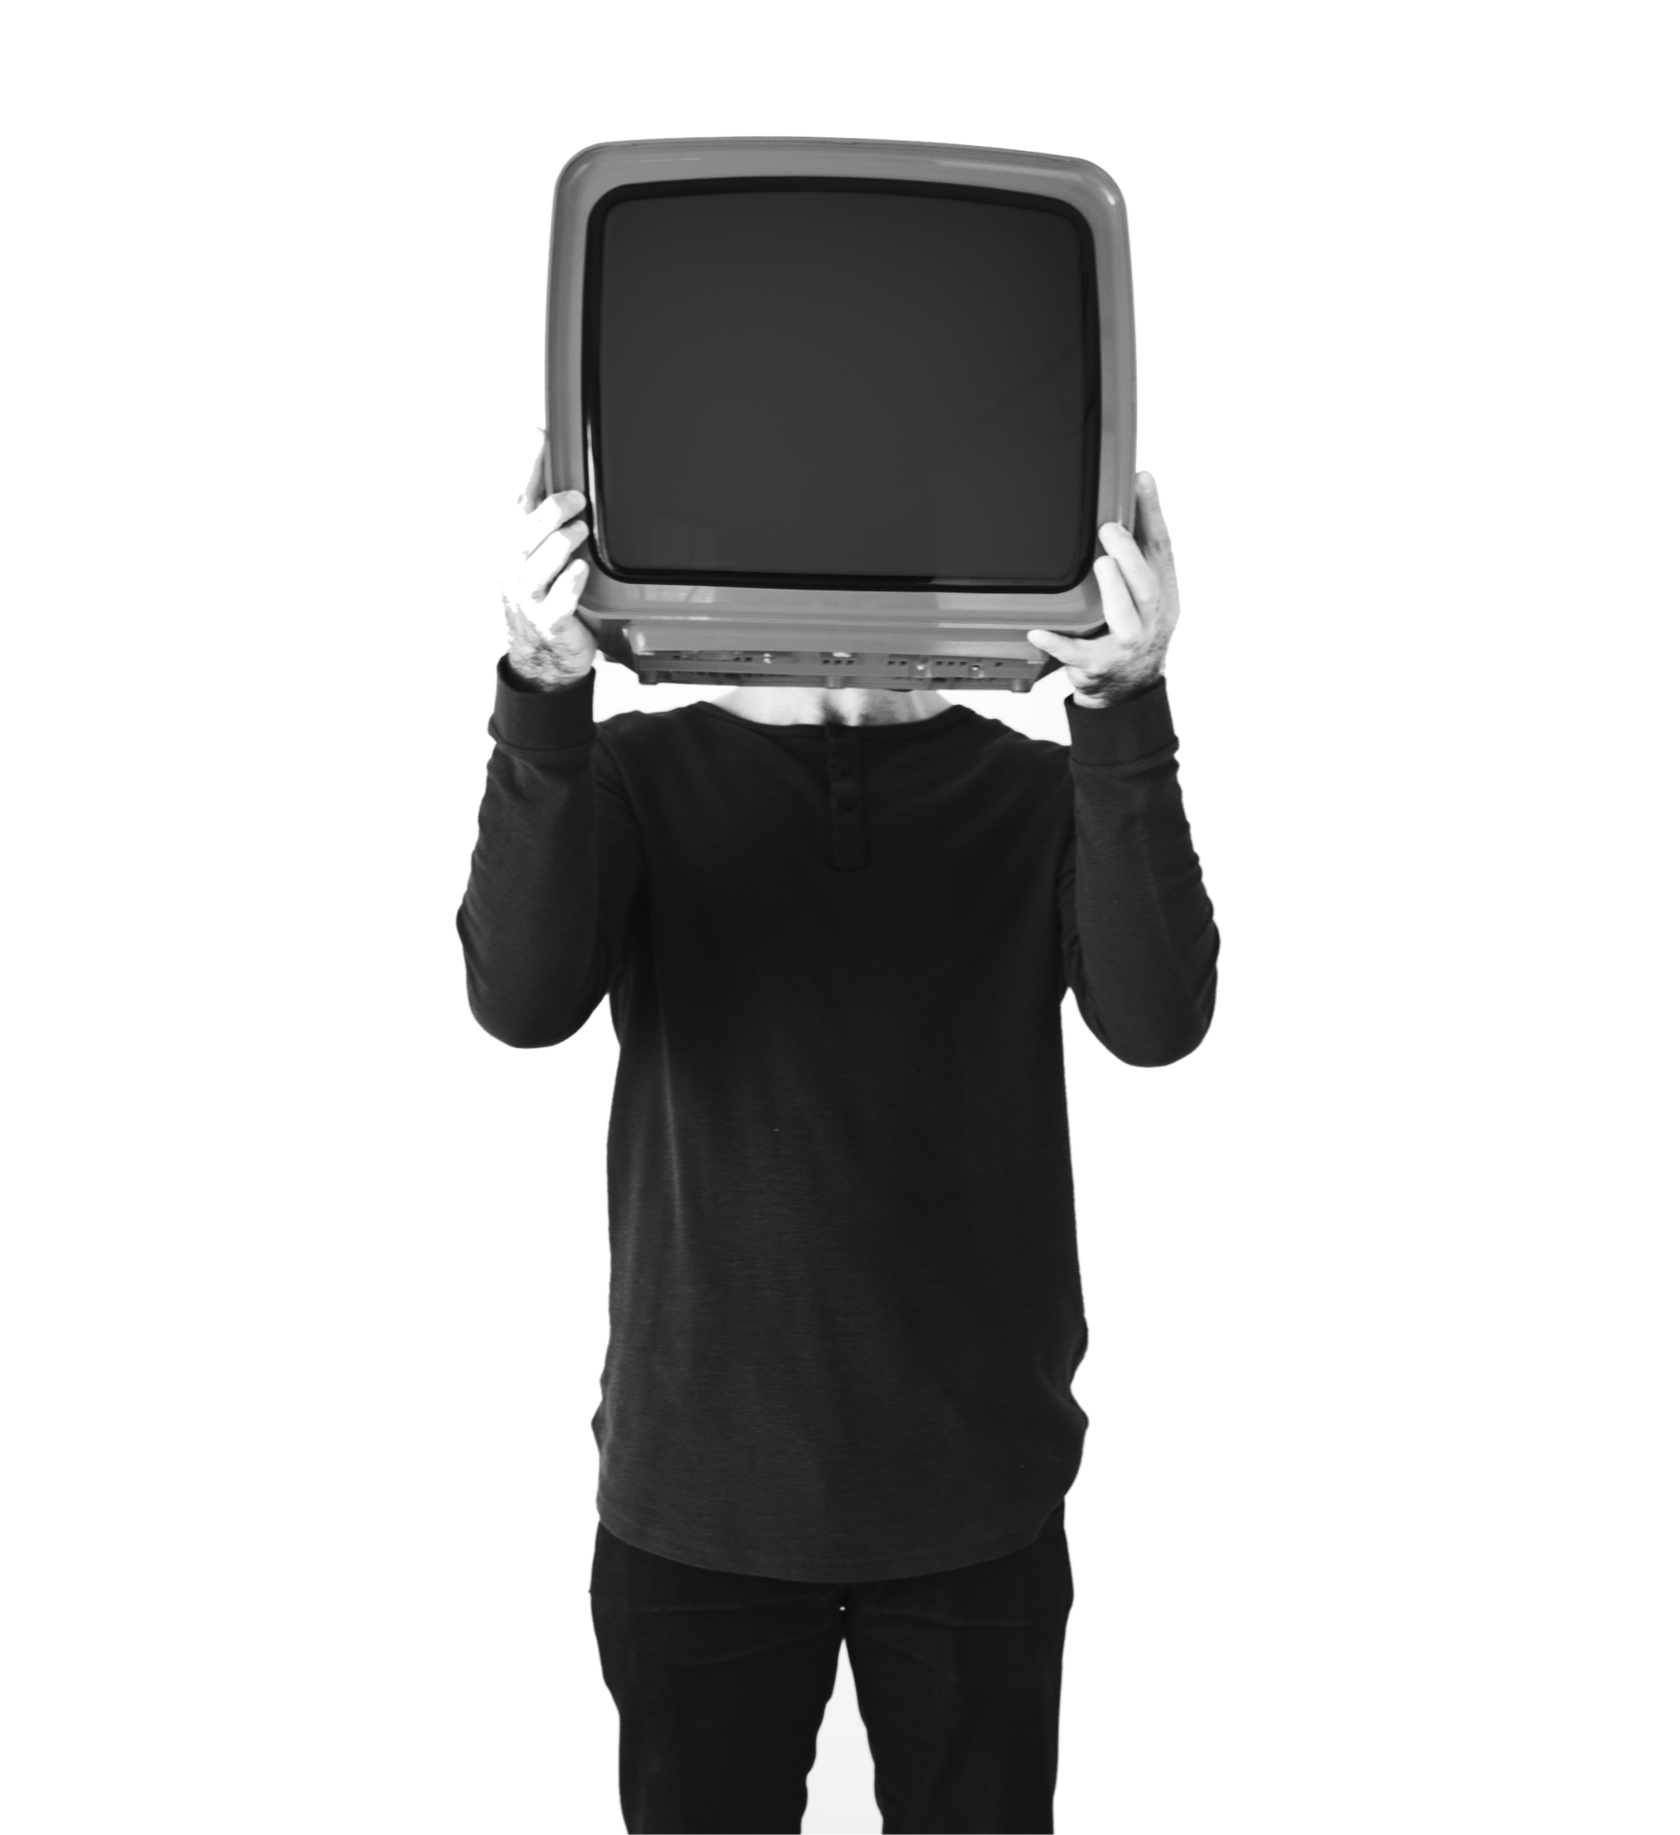 Картинка tv man. Телевизор вместо головы. Человек телевизор. Человек держит телевизор. Мужчина с телевизором в руках.